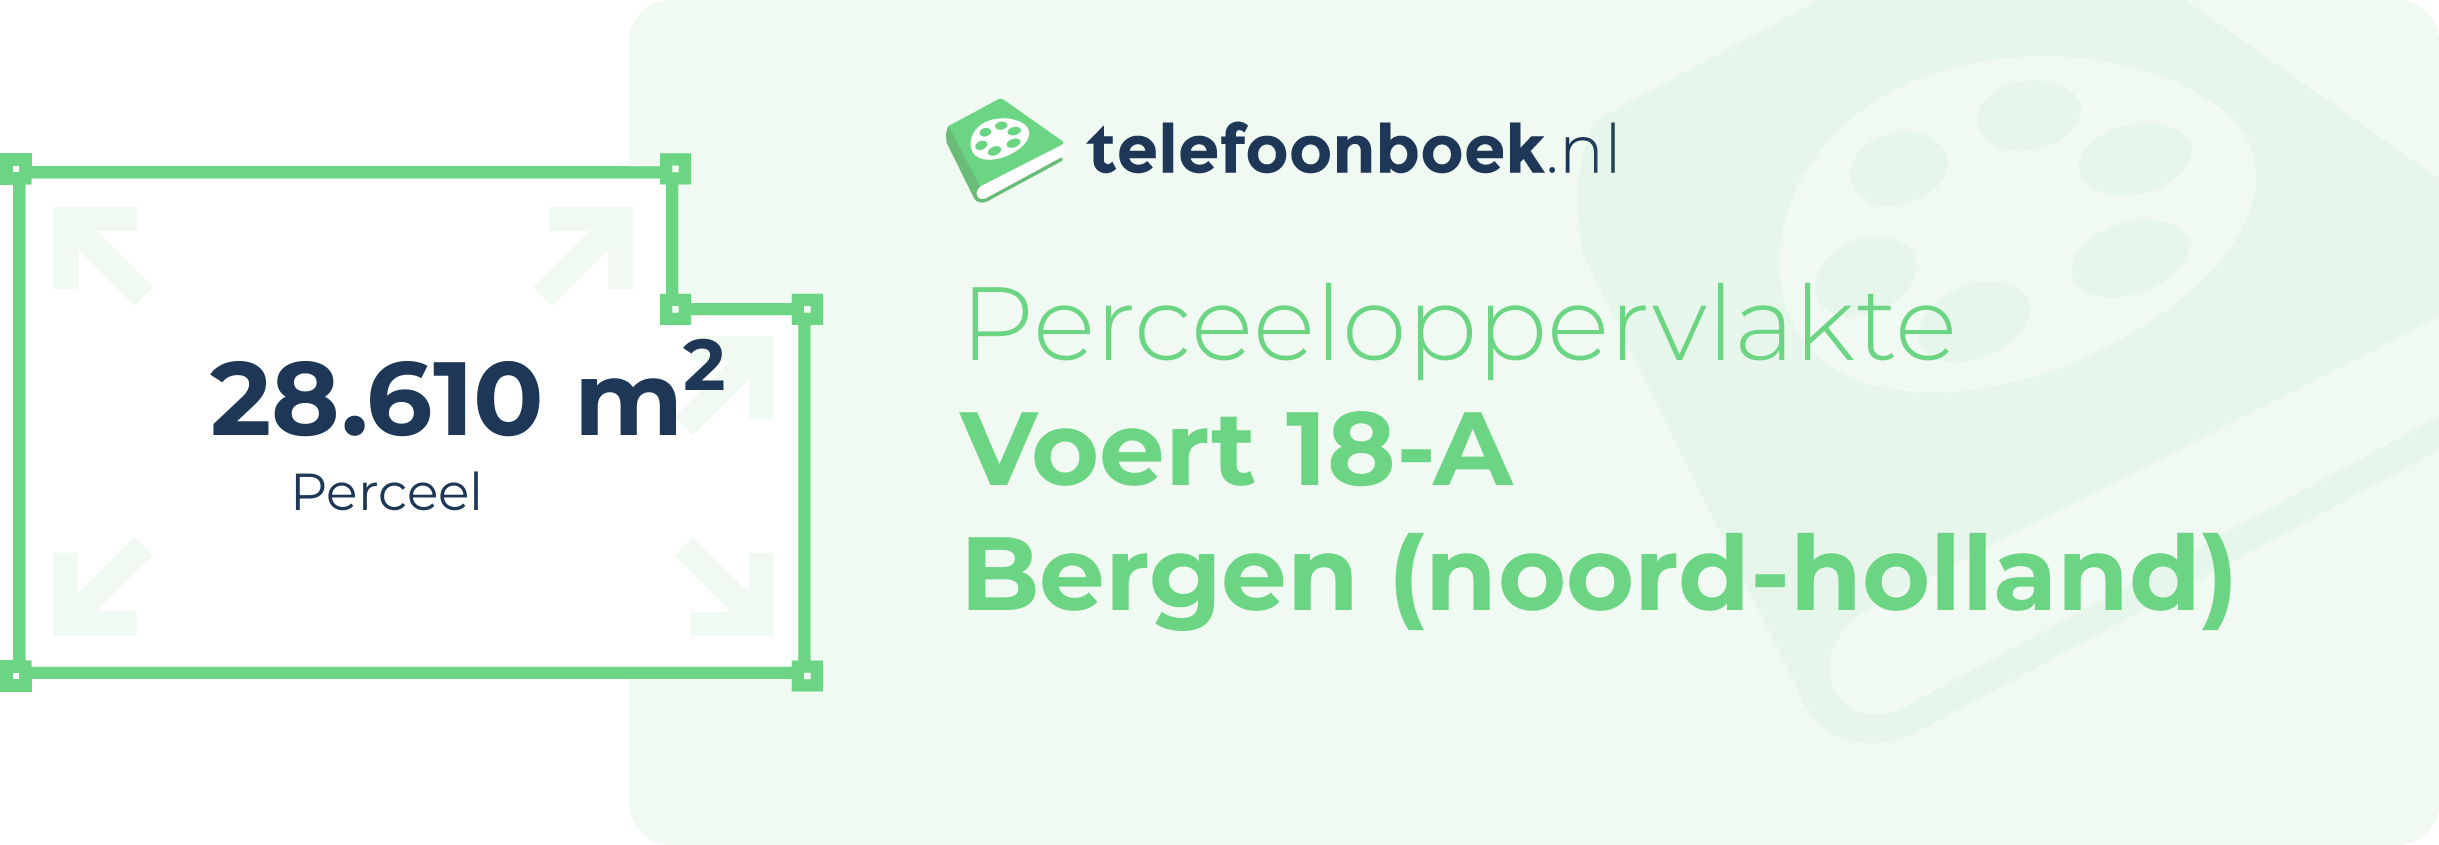 Perceeloppervlakte Voert 18-A Bergen (Noord-Holland)